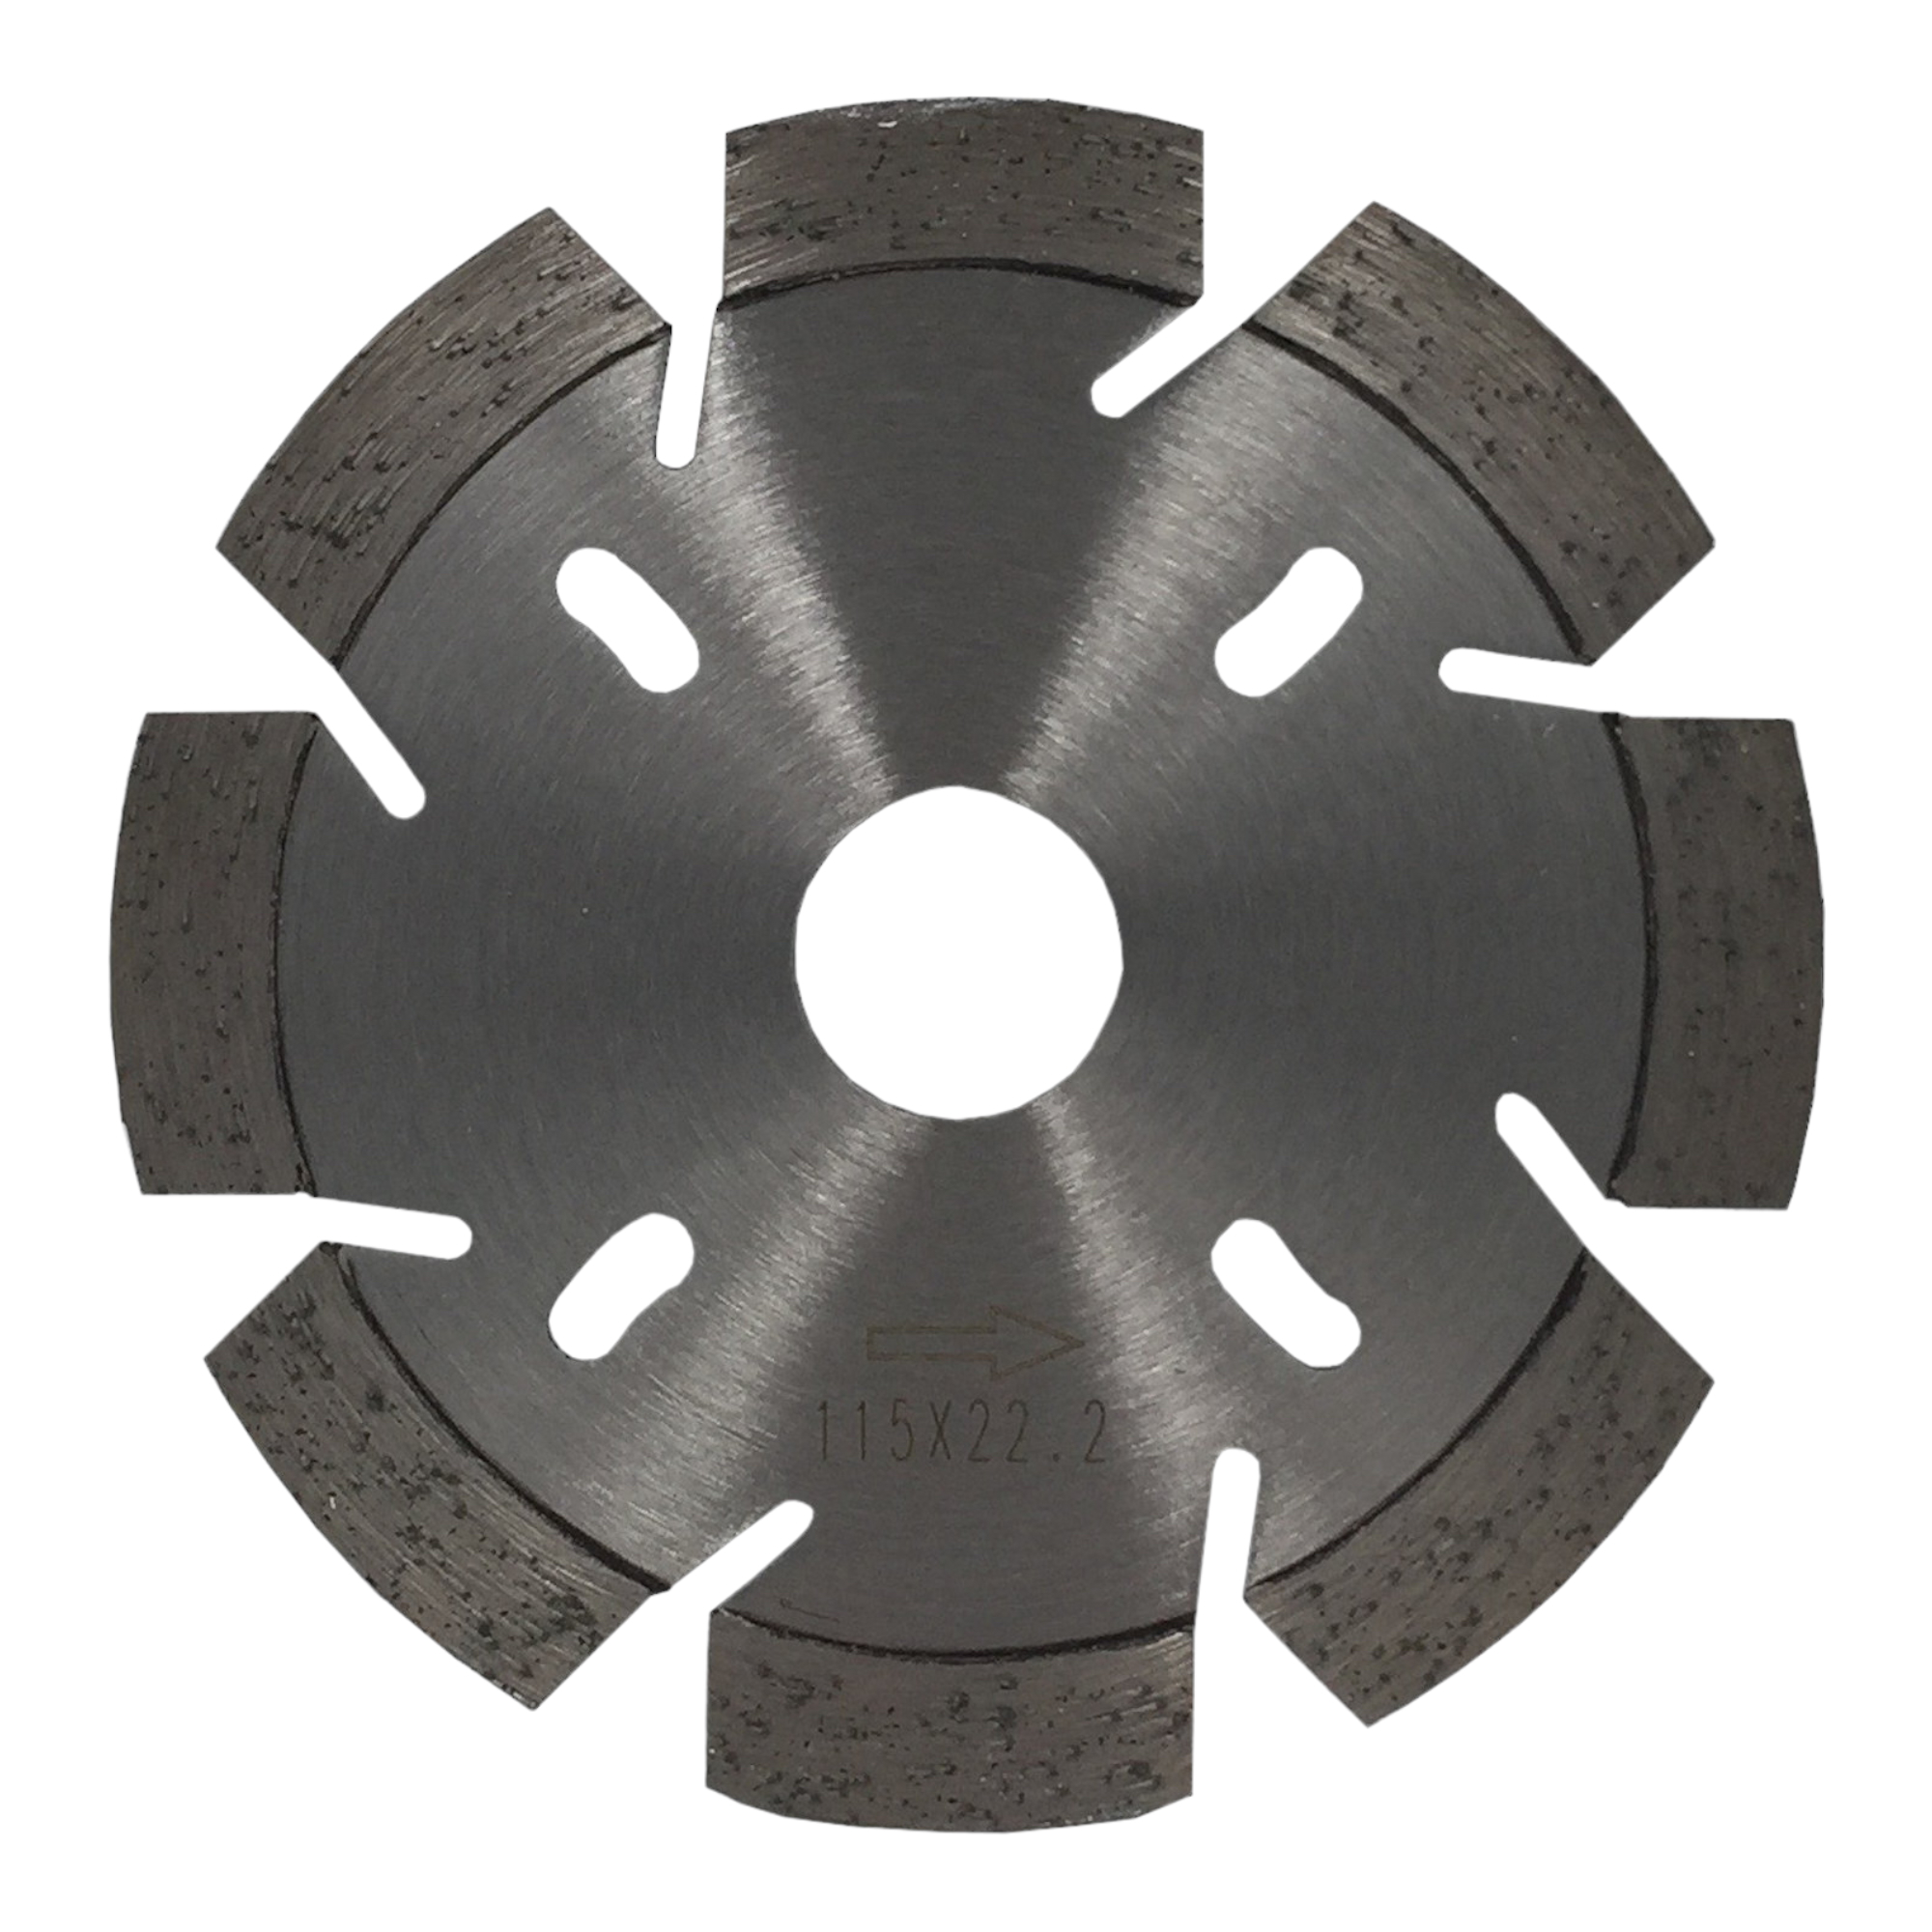 Diamantscheibe Power Cut Pro 115 mm für Beton Granit Klinker Stein